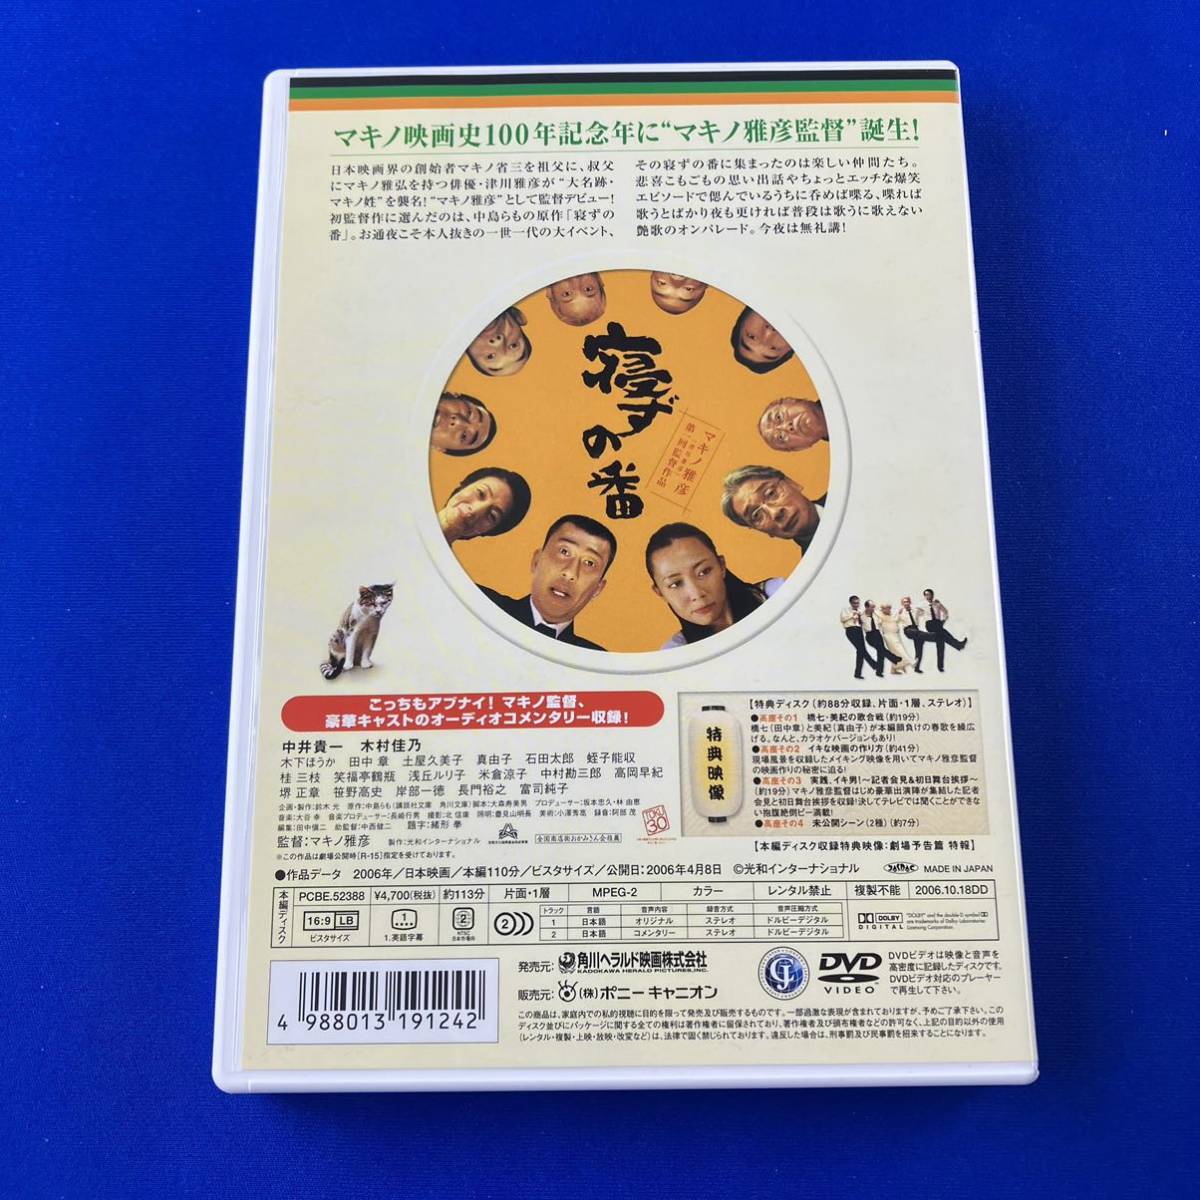 SD1 寝ずの番 特別番 DVD マキノ雅彦 第一回監督作品_画像6